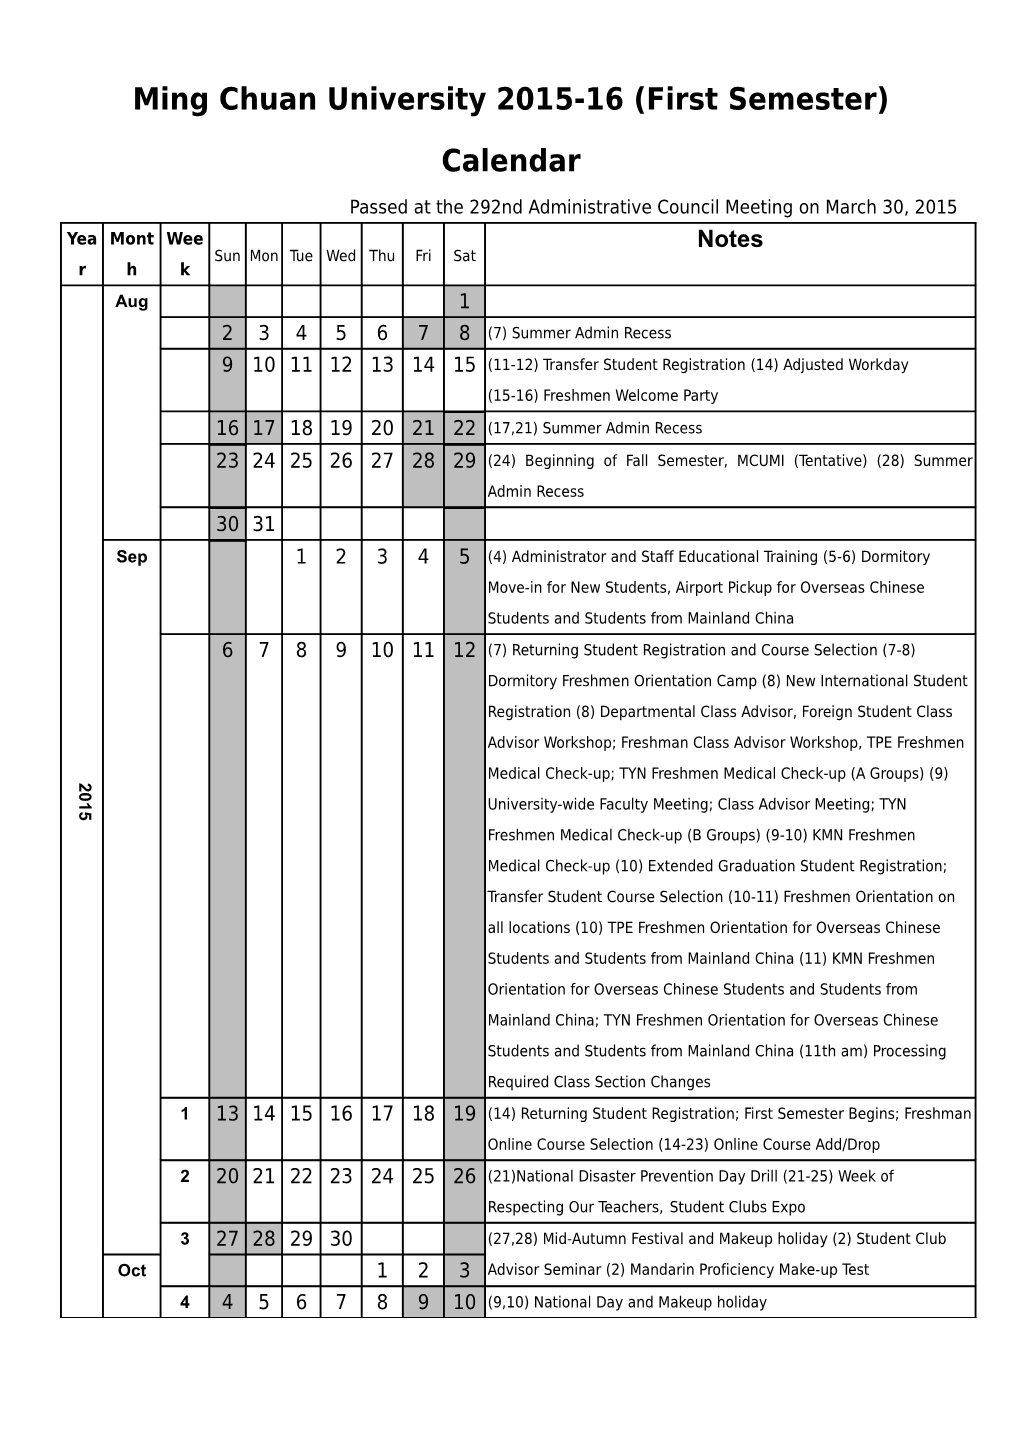 Ming Chuan University 2015-16 (First Semester) Calendar